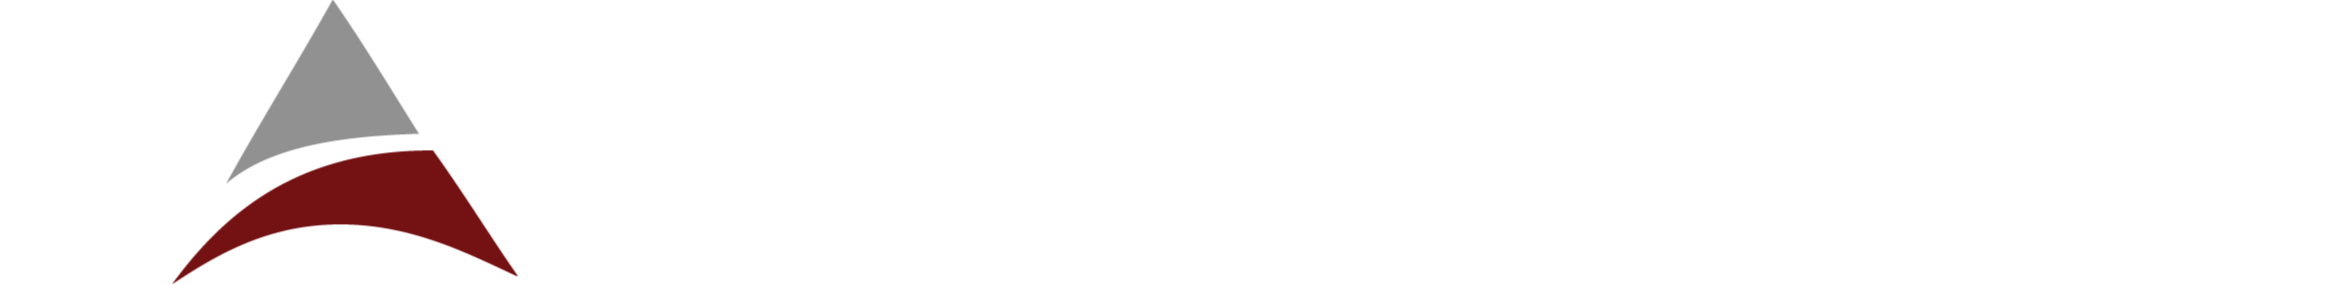 Allsec Technologies Ltd logo